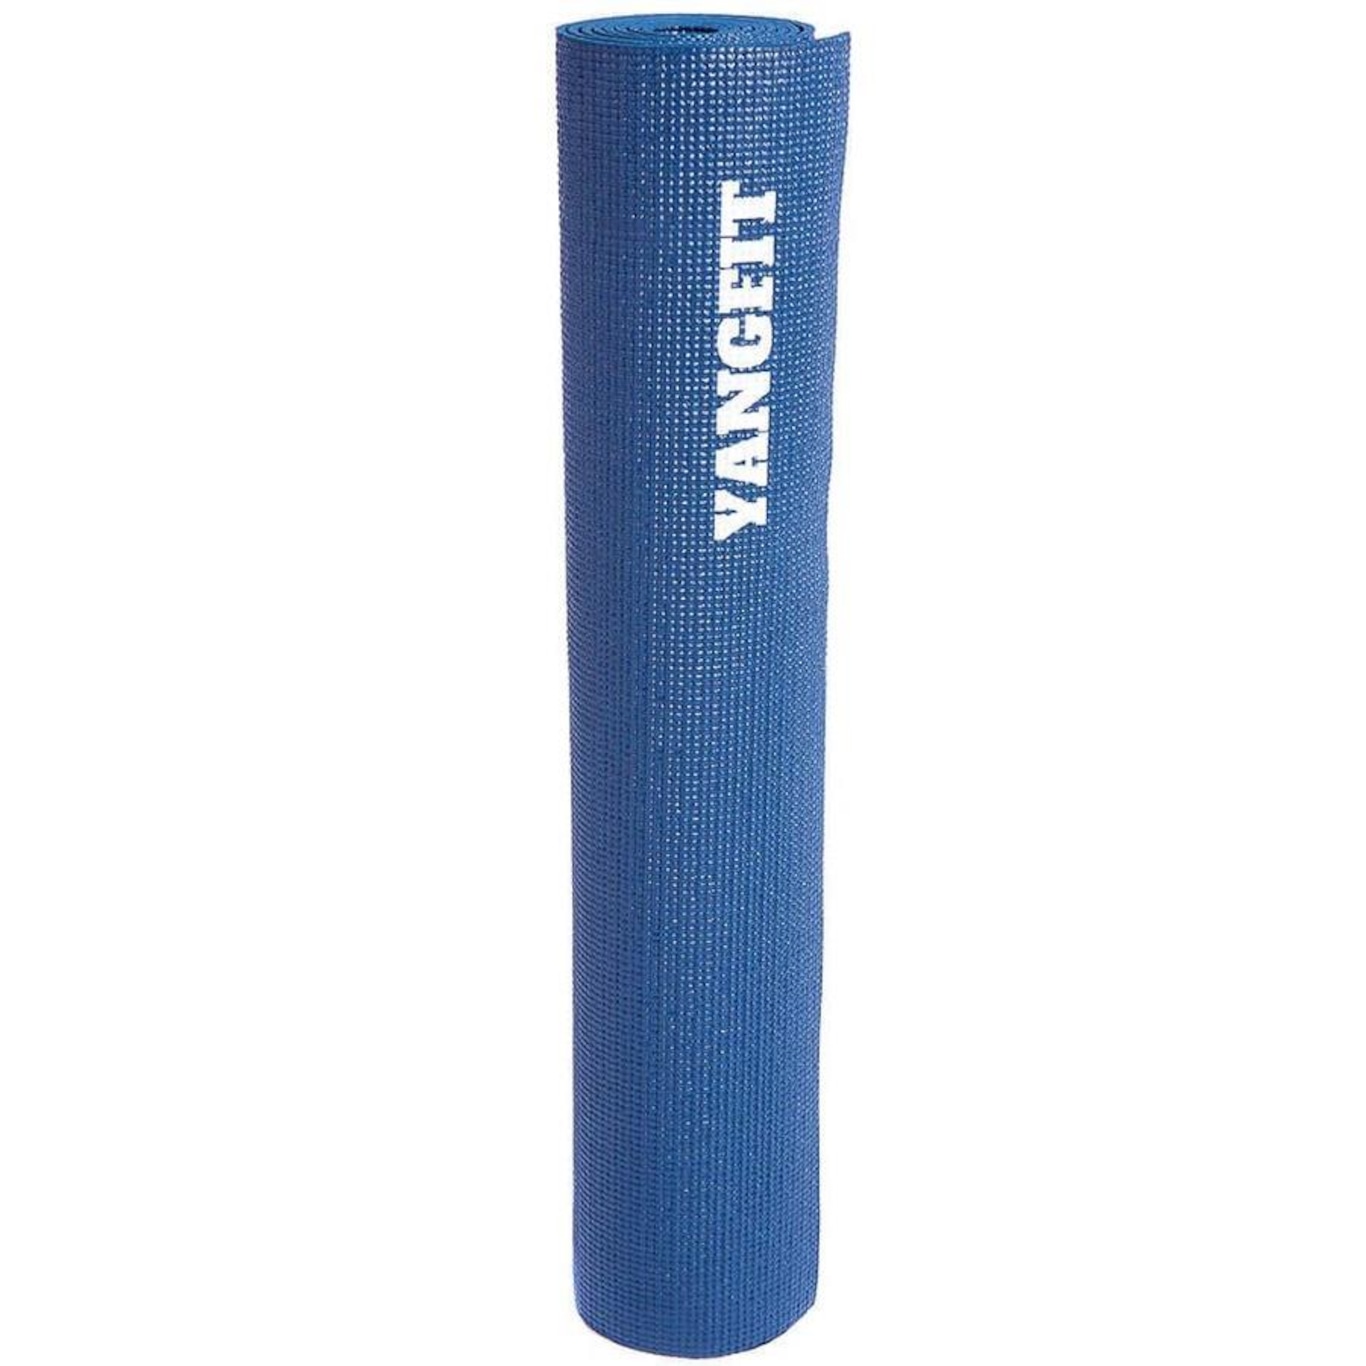 Tapete Yoga Yangfit Mat PVC Ecológico Pilates - 4mm - Foto 3